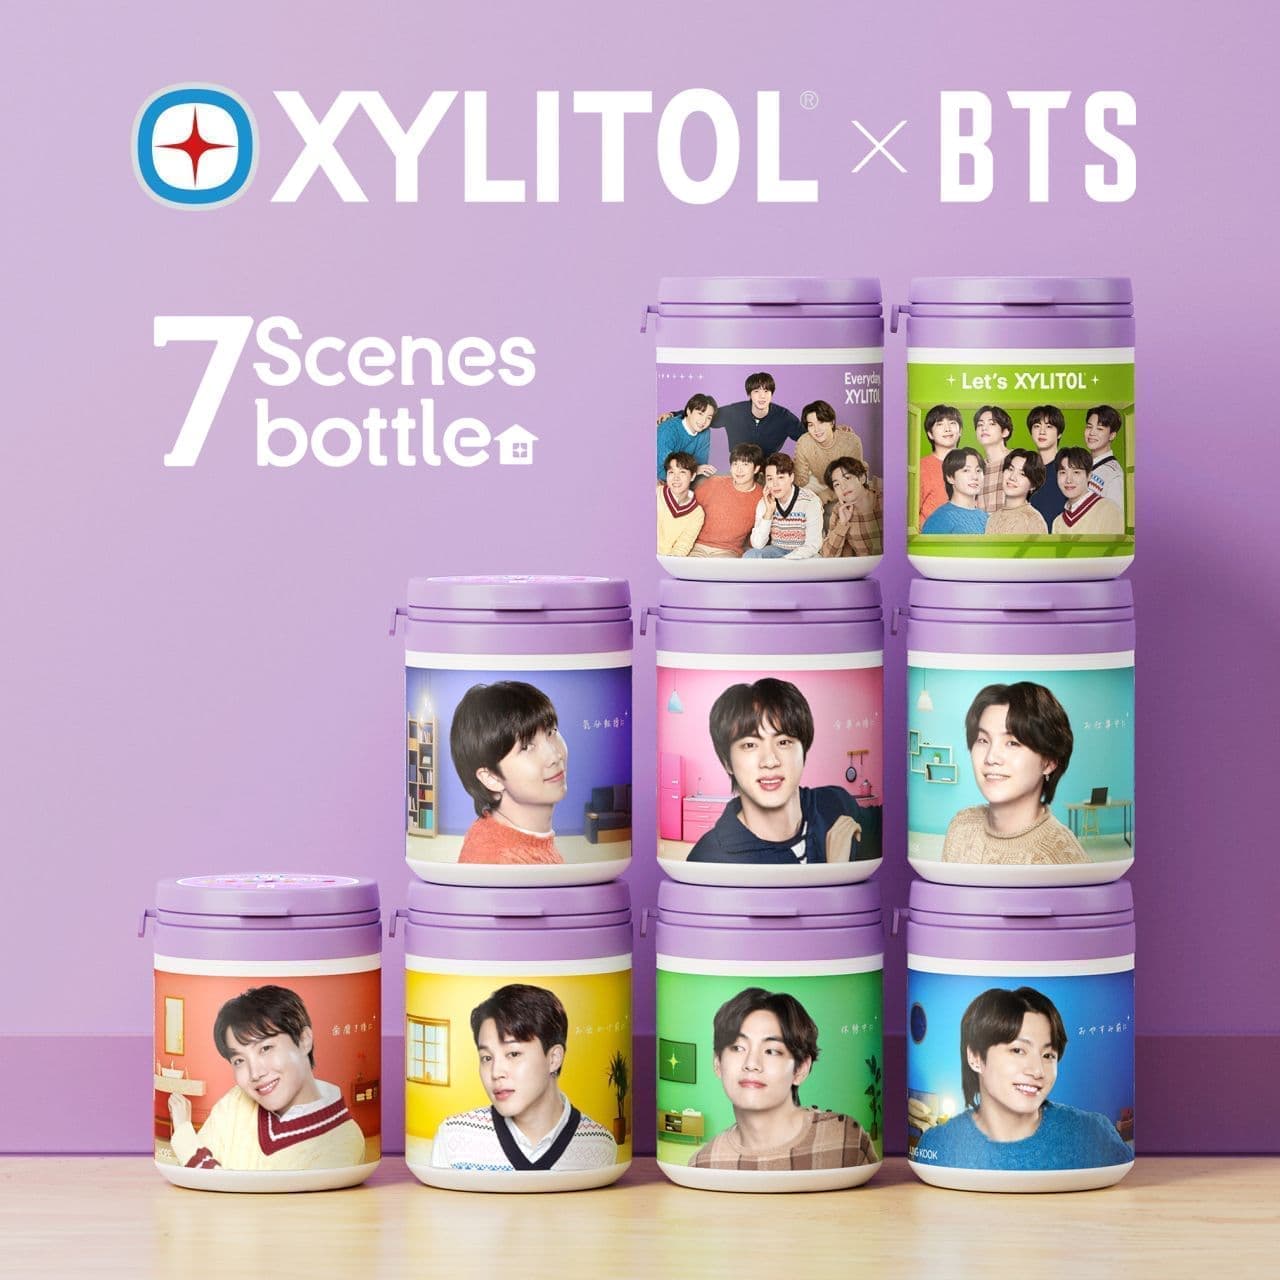 Lotte "Xylitol x BTS 7 Scenes Bottle